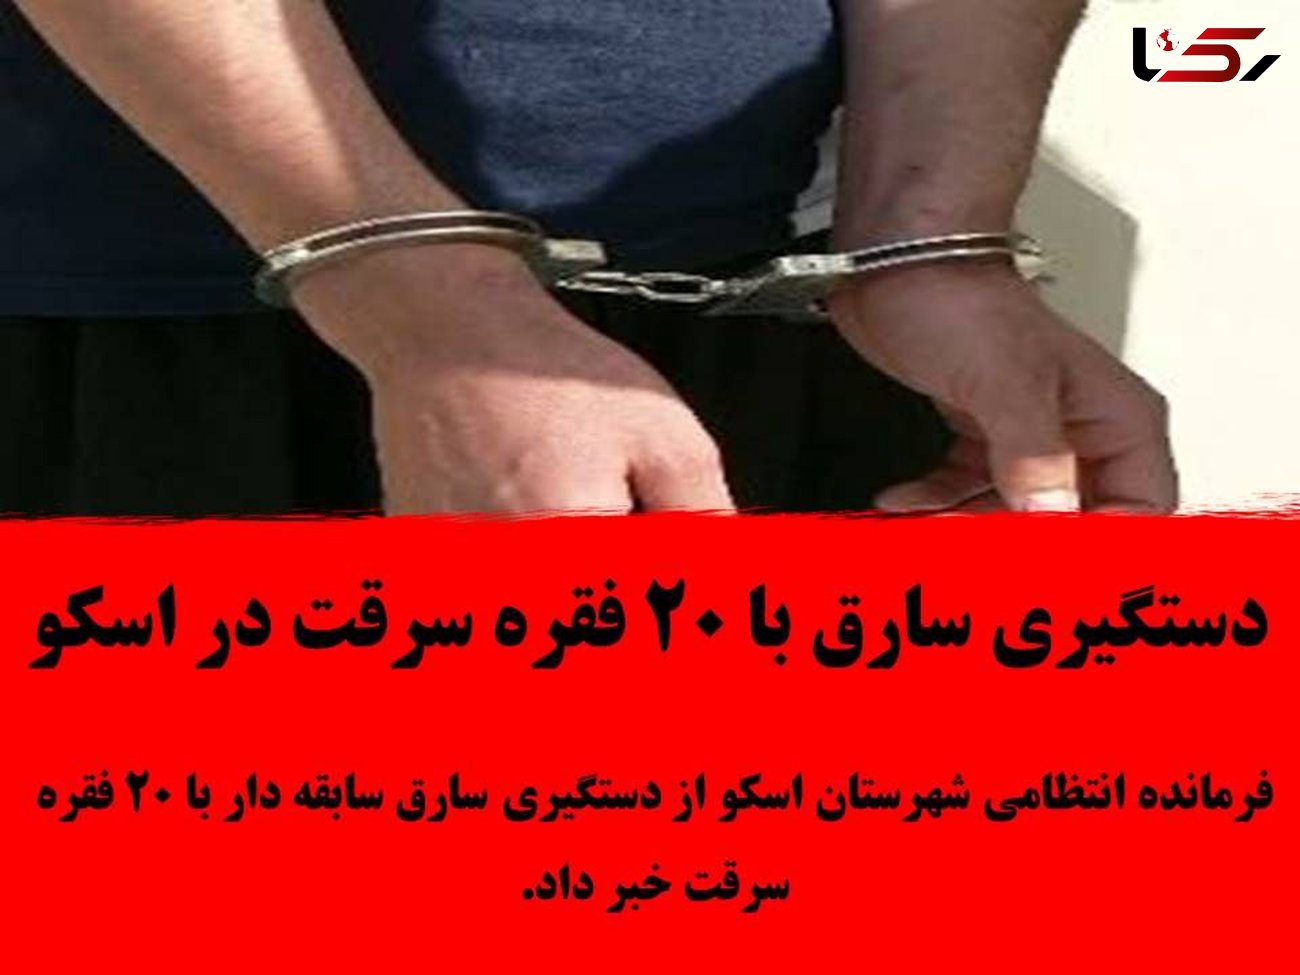 دستگیری سارق با 20 فقره سرقت در اسکو